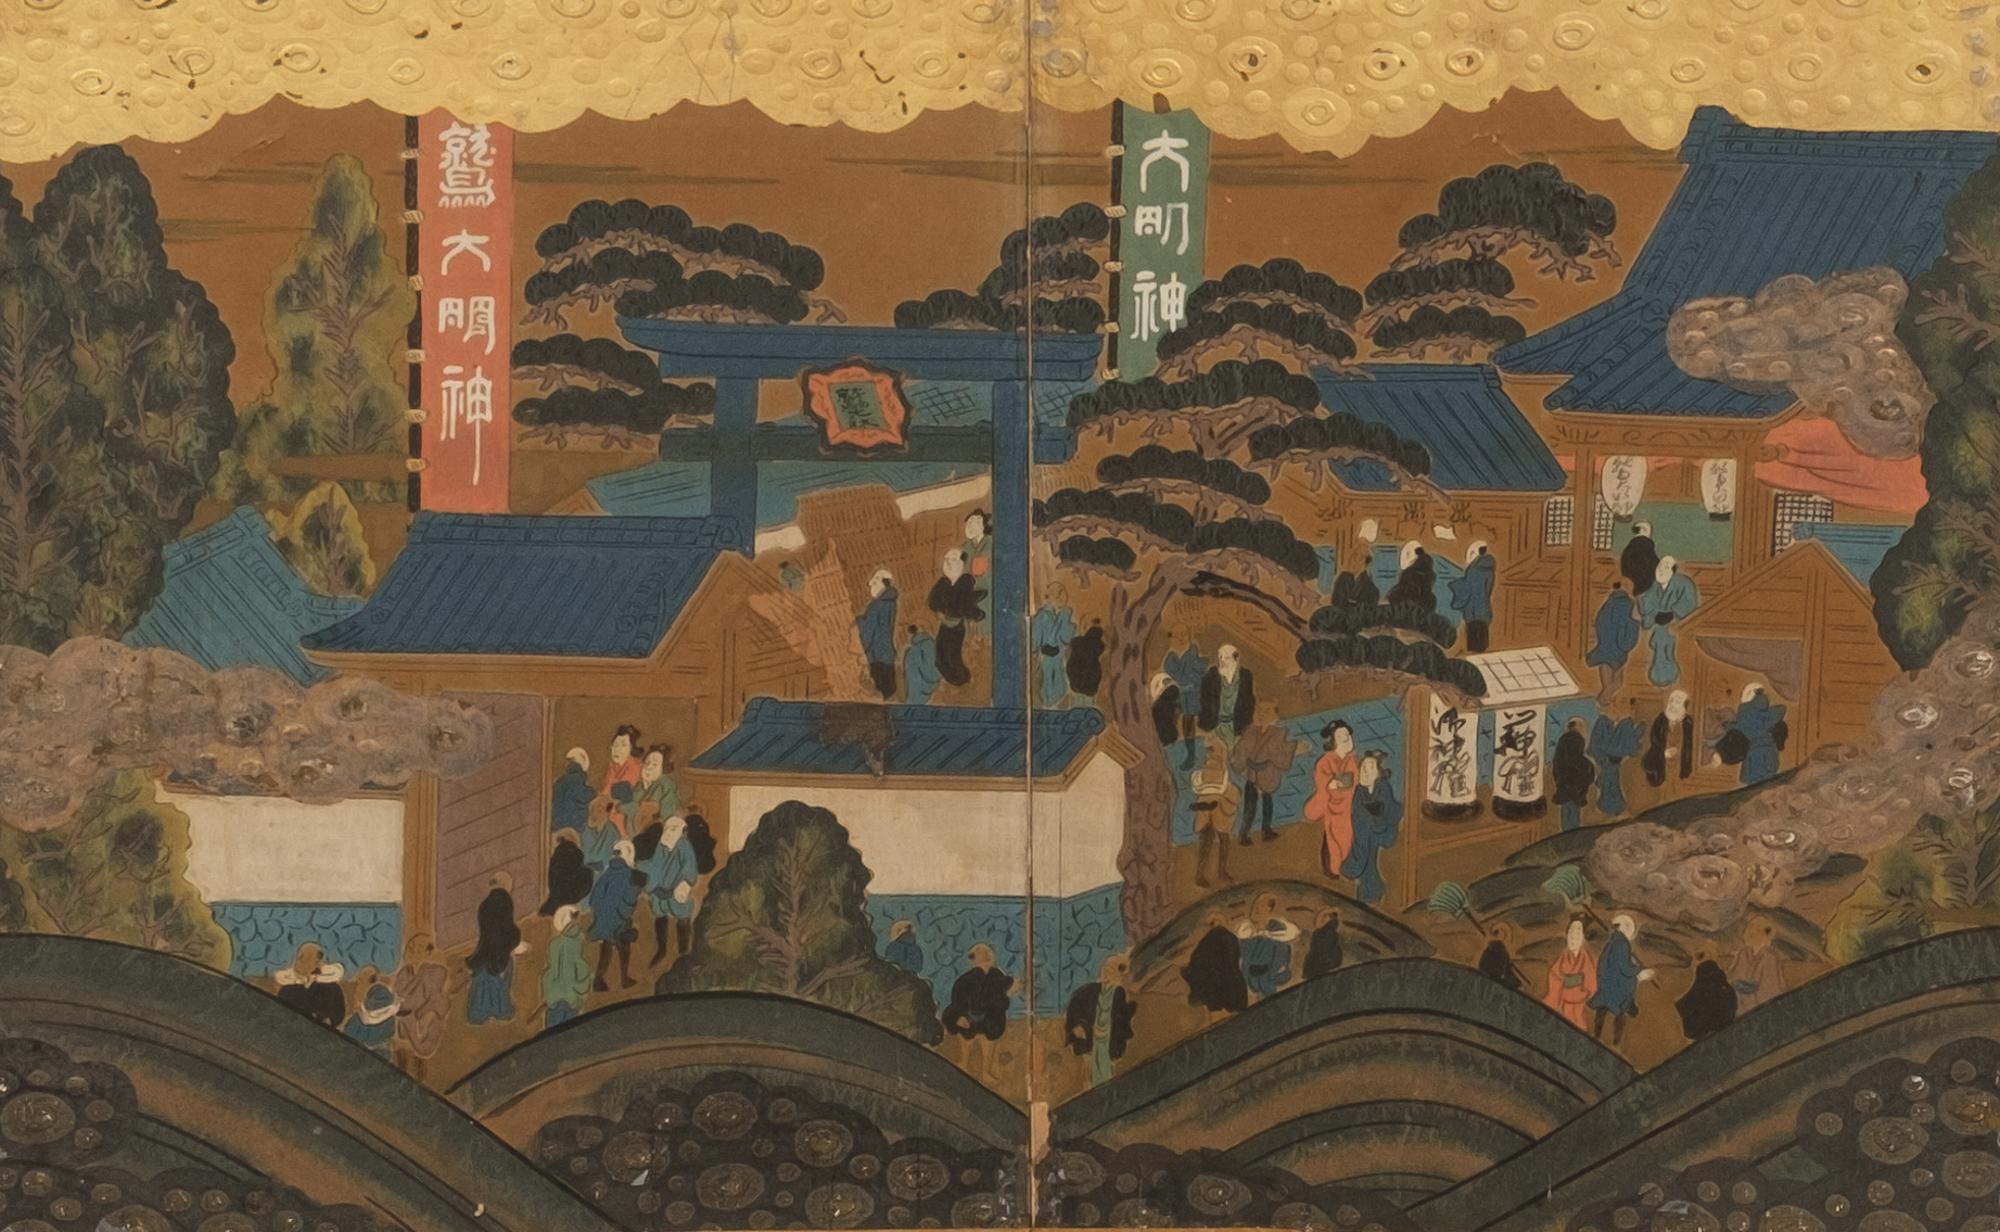 Ein schönes, niedriges, sehr dekoratives 6-teiliges Byôbu (Paravent) zeigt eine fortlaufende Genremalerei, die verschiedene Facetten des täglichen Lebens während der Edo-Zeit einfängt. Es enthält Szenen wie Boote, die gemächlich auf einem See